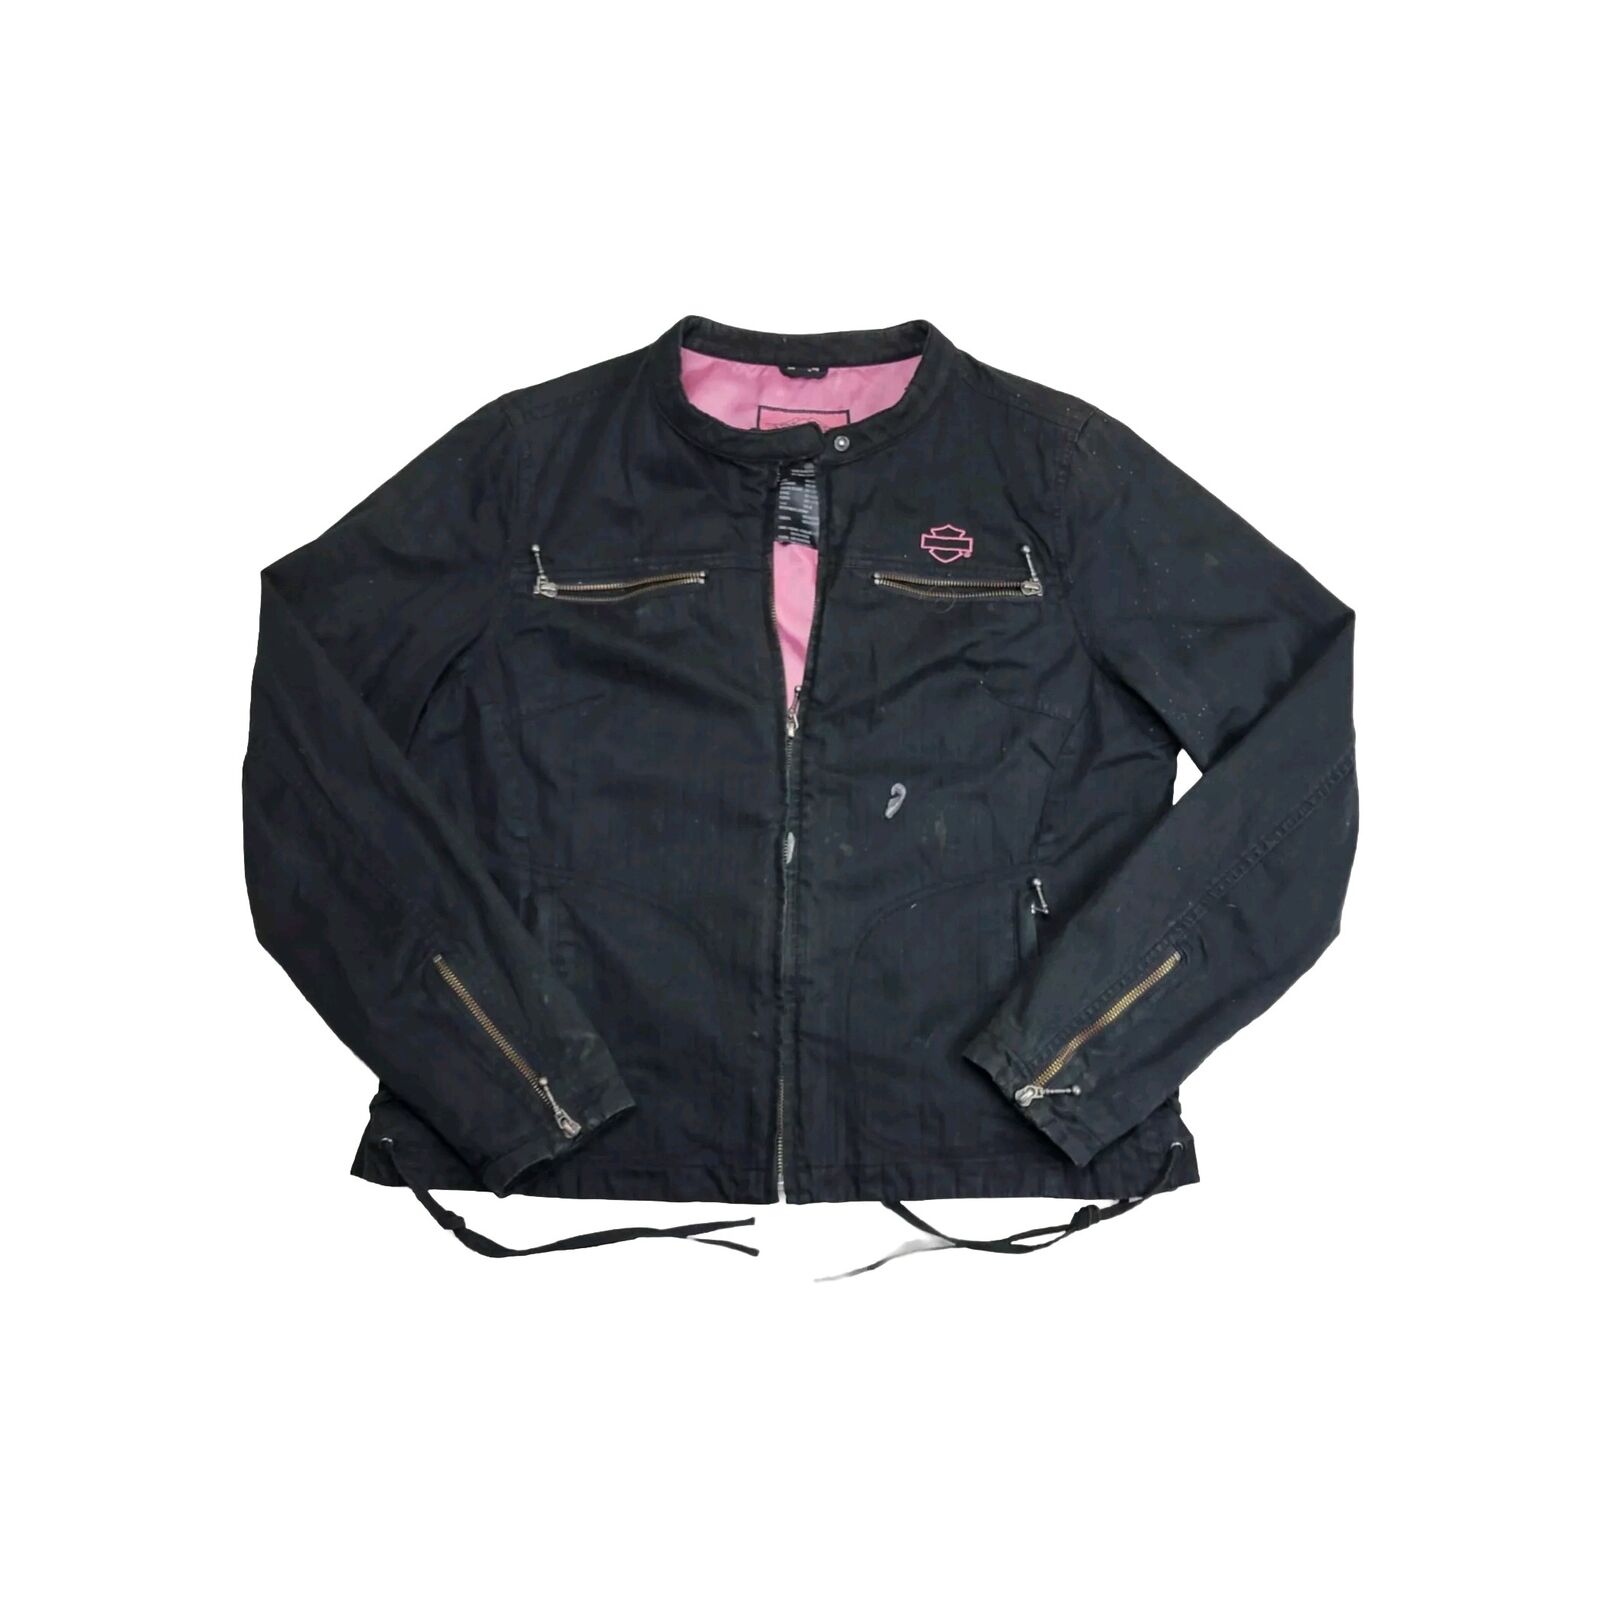 Vintage Harley Davidson Biker Jacket Women's Size XL Lined Pink